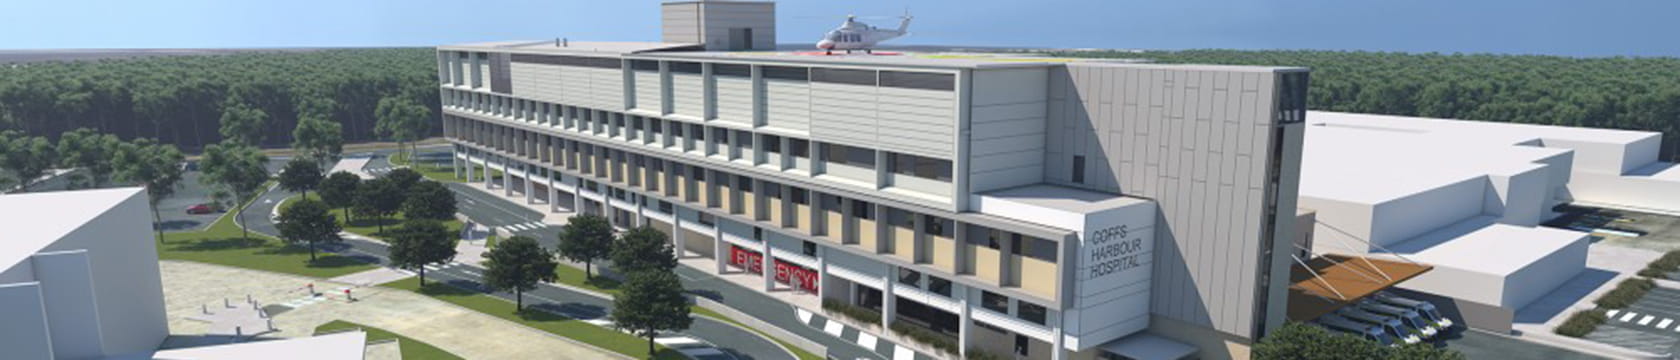 Coffs Harbour Hospital expansion